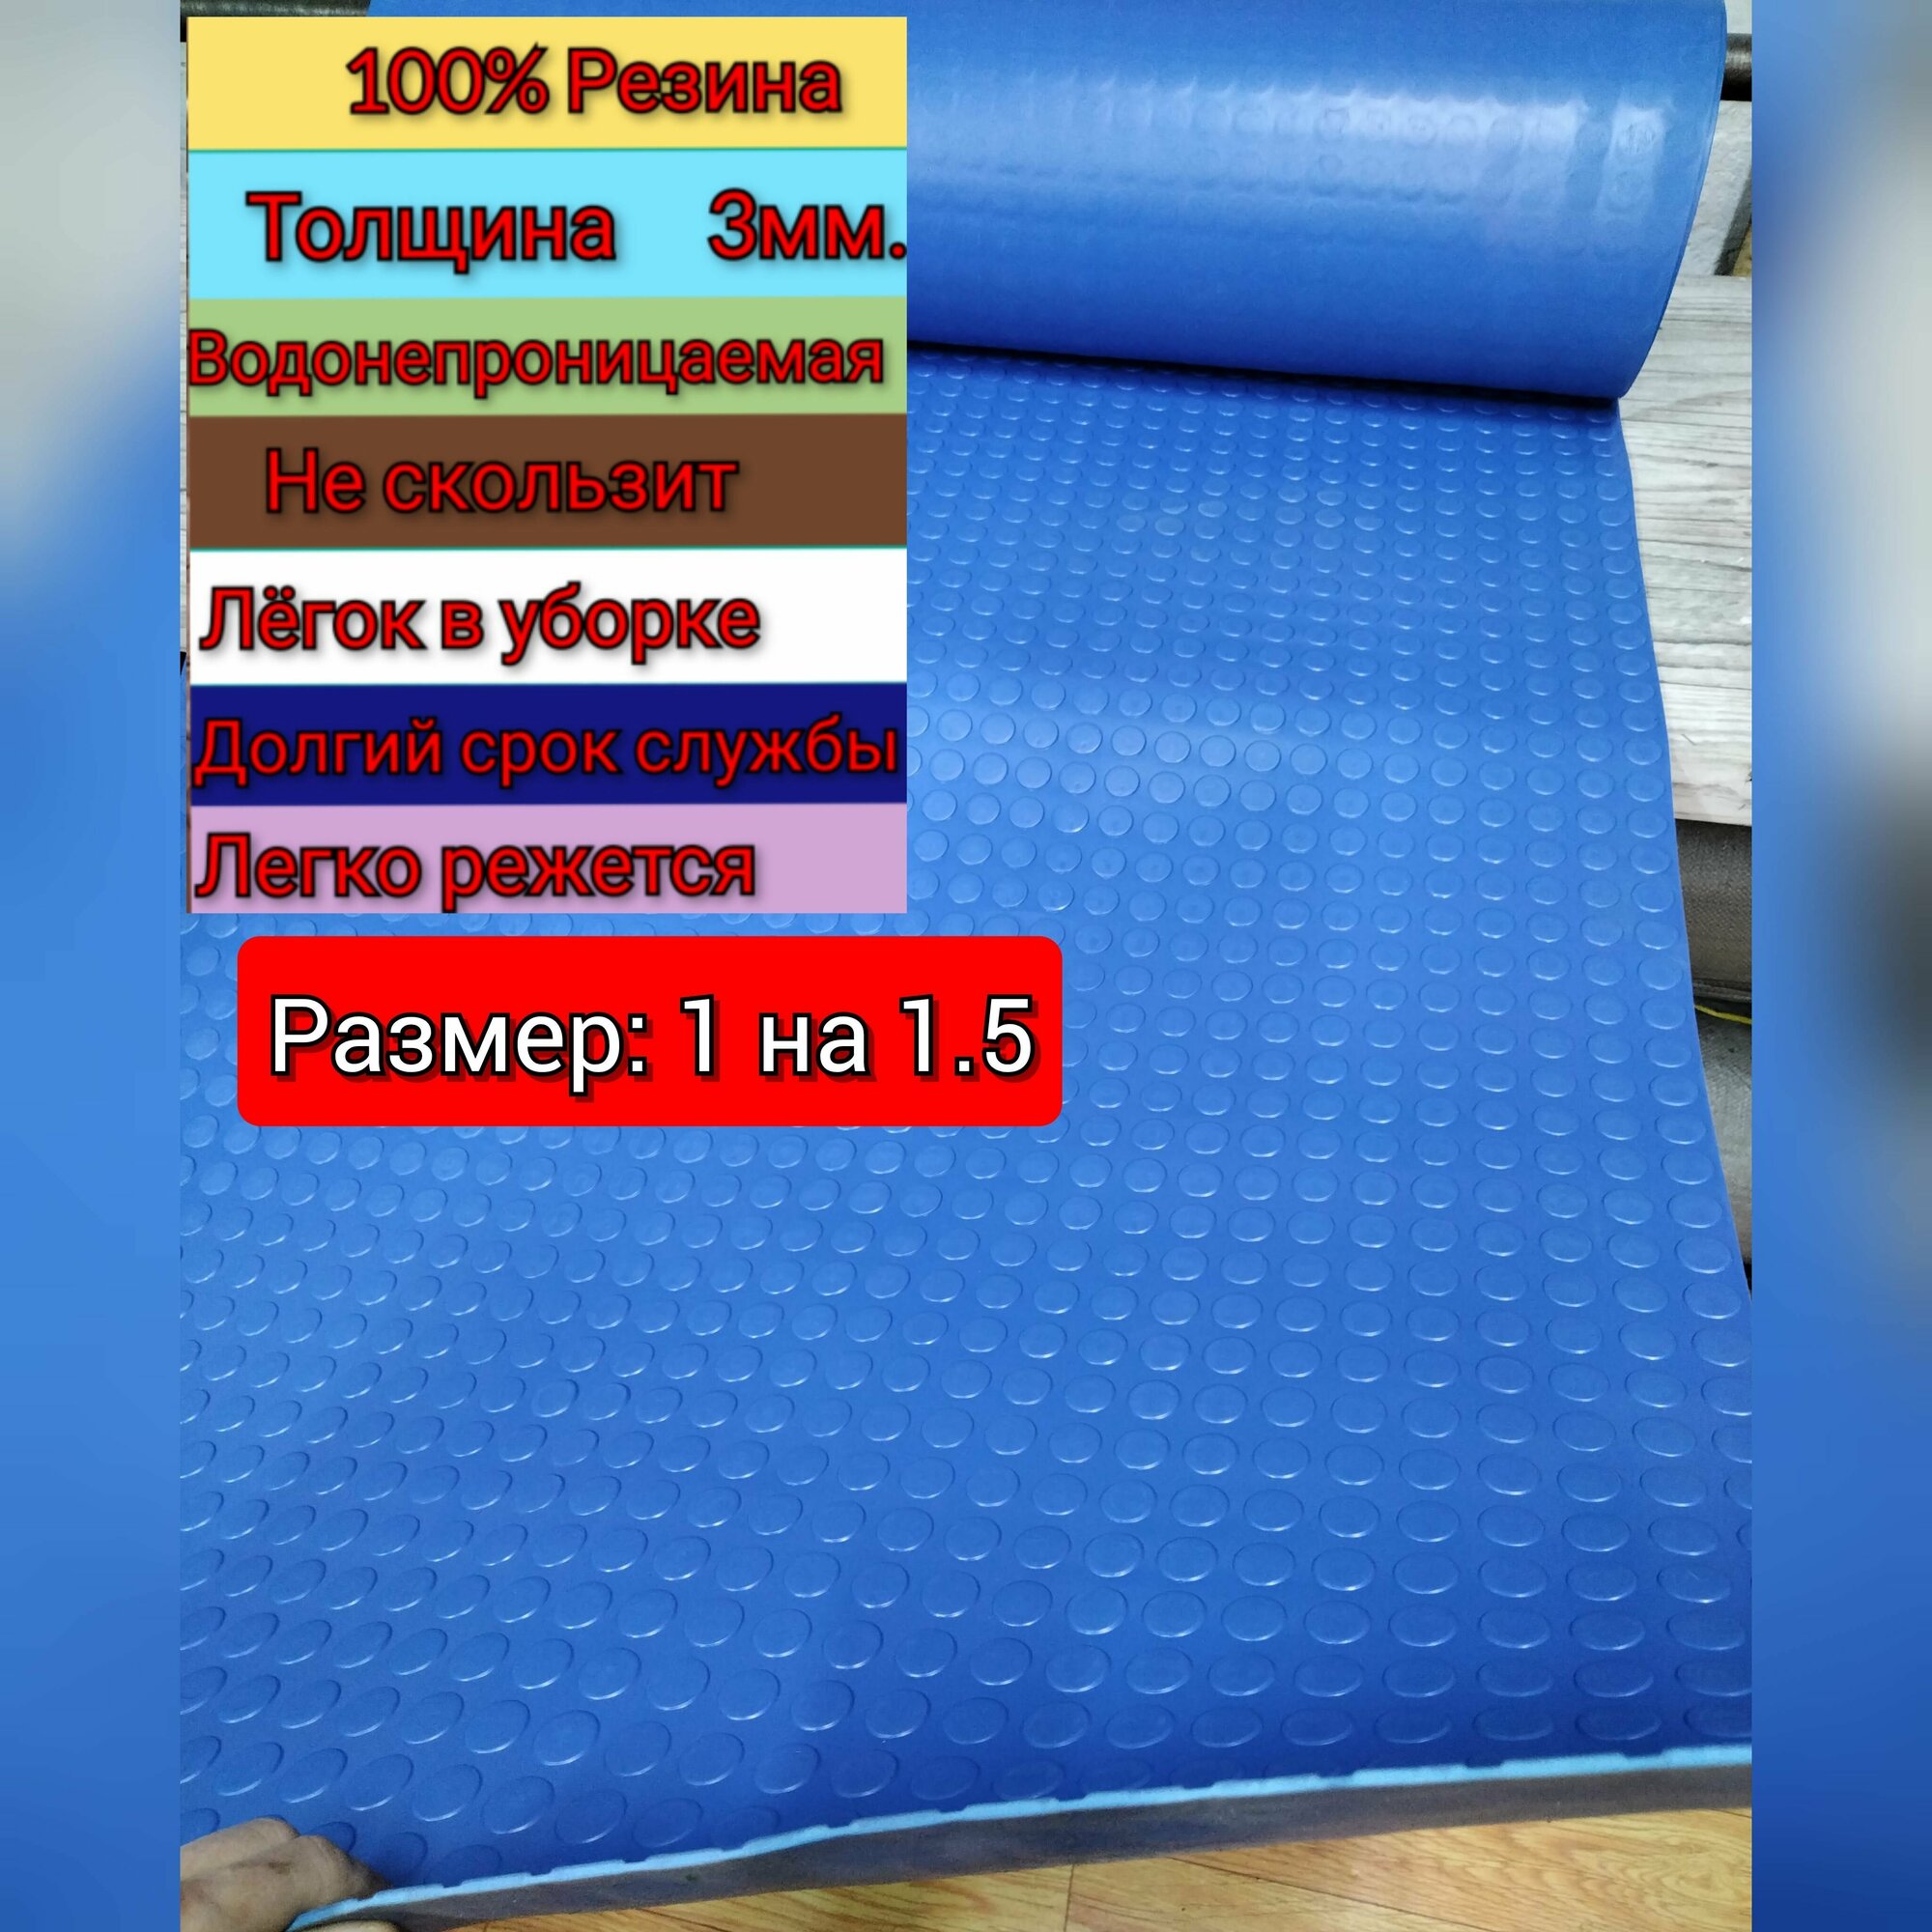 Резиновое покрытие напольное в рулоне 1 х 1.5 (Монета, цвет синий) Резиновая дорожка для авто, гаража, ступень, для лифта